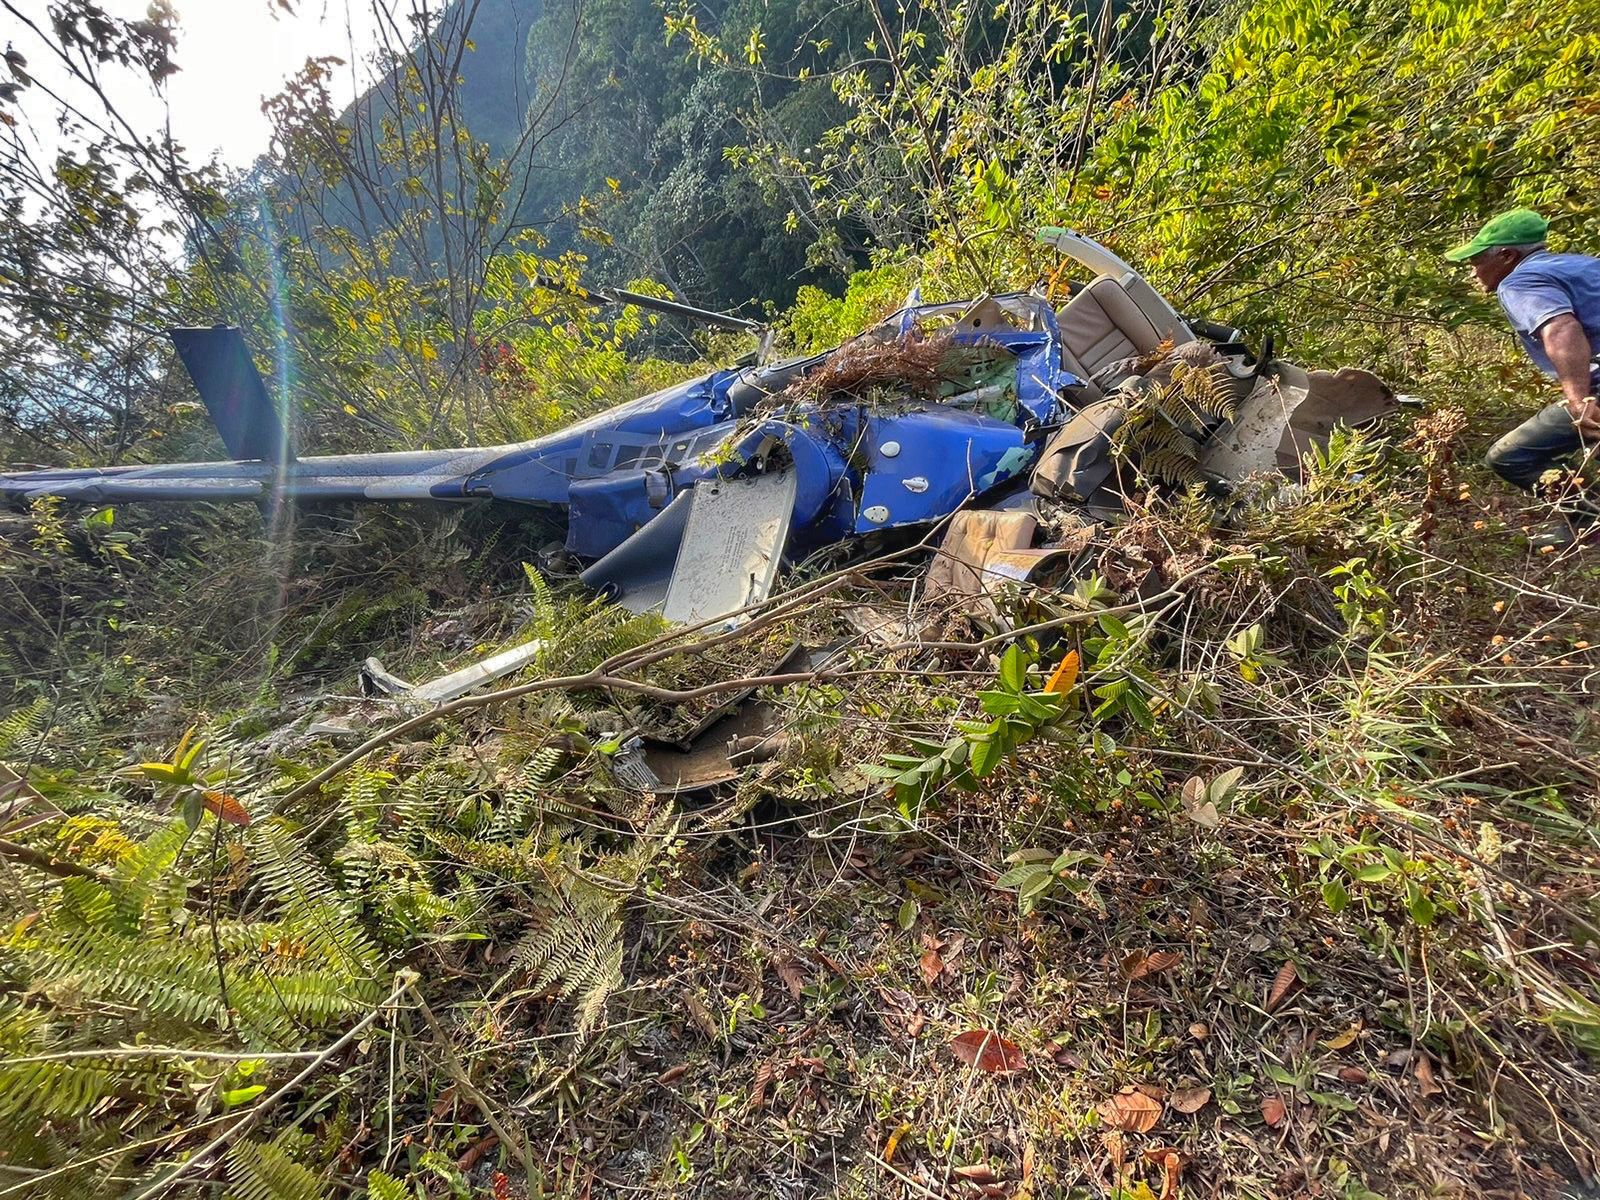 DAC confirma accidente de helicóptero y muerte de piloto en Los Cacaos